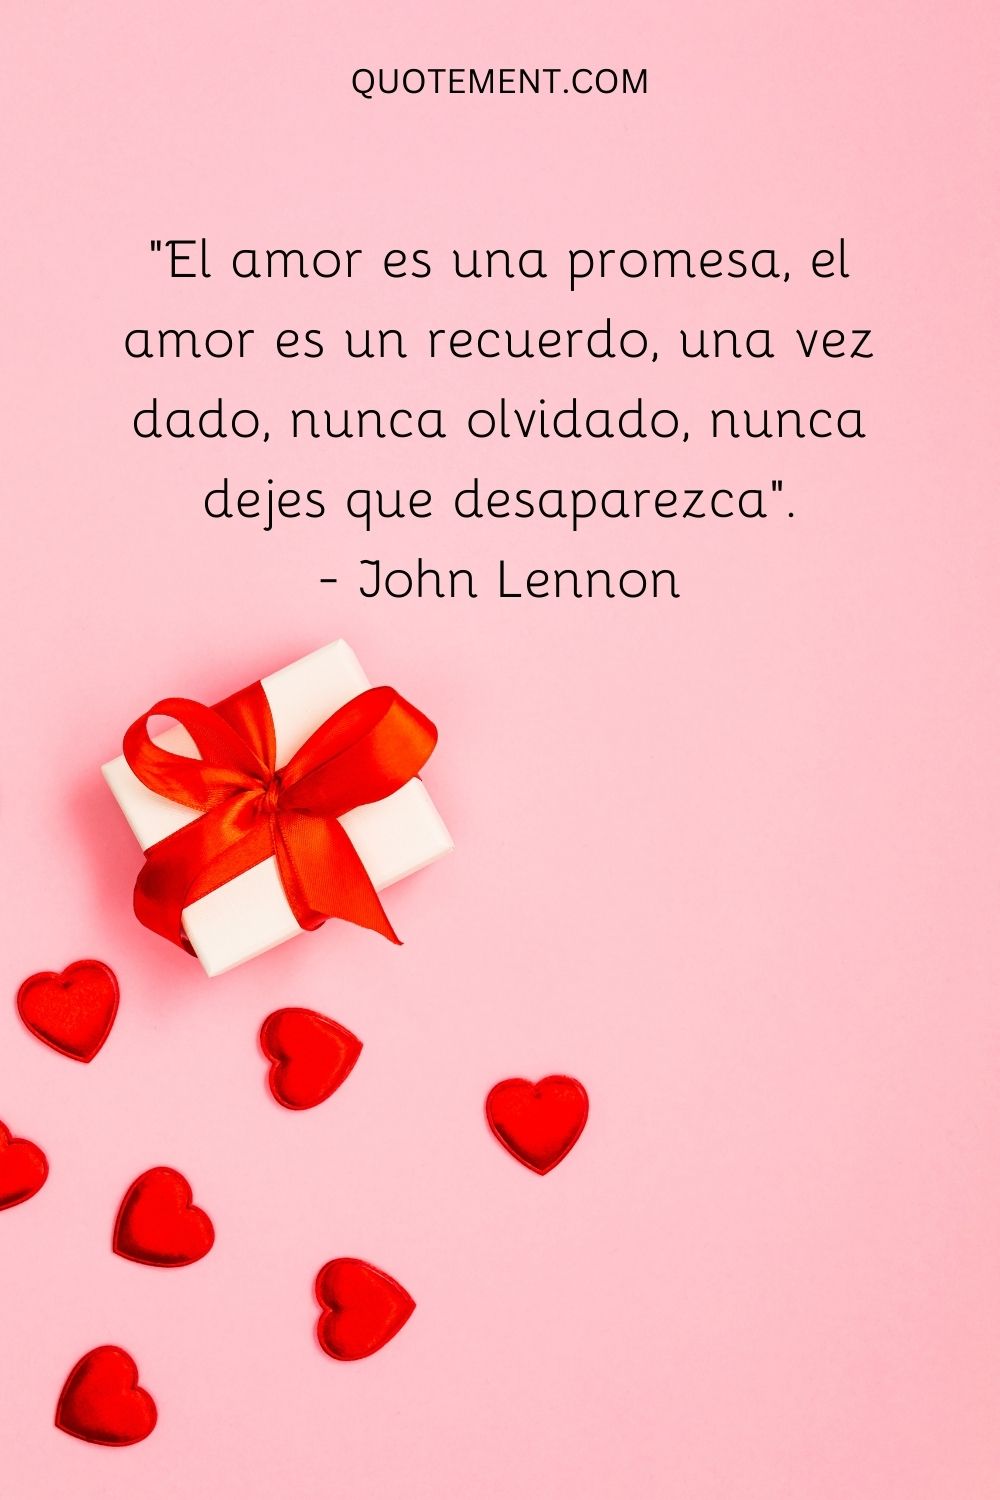 "El amor es una promesa, el amor es un recuerdo, una vez dado, nunca olvidado, nunca dejes que desaparezca". - John Lennon